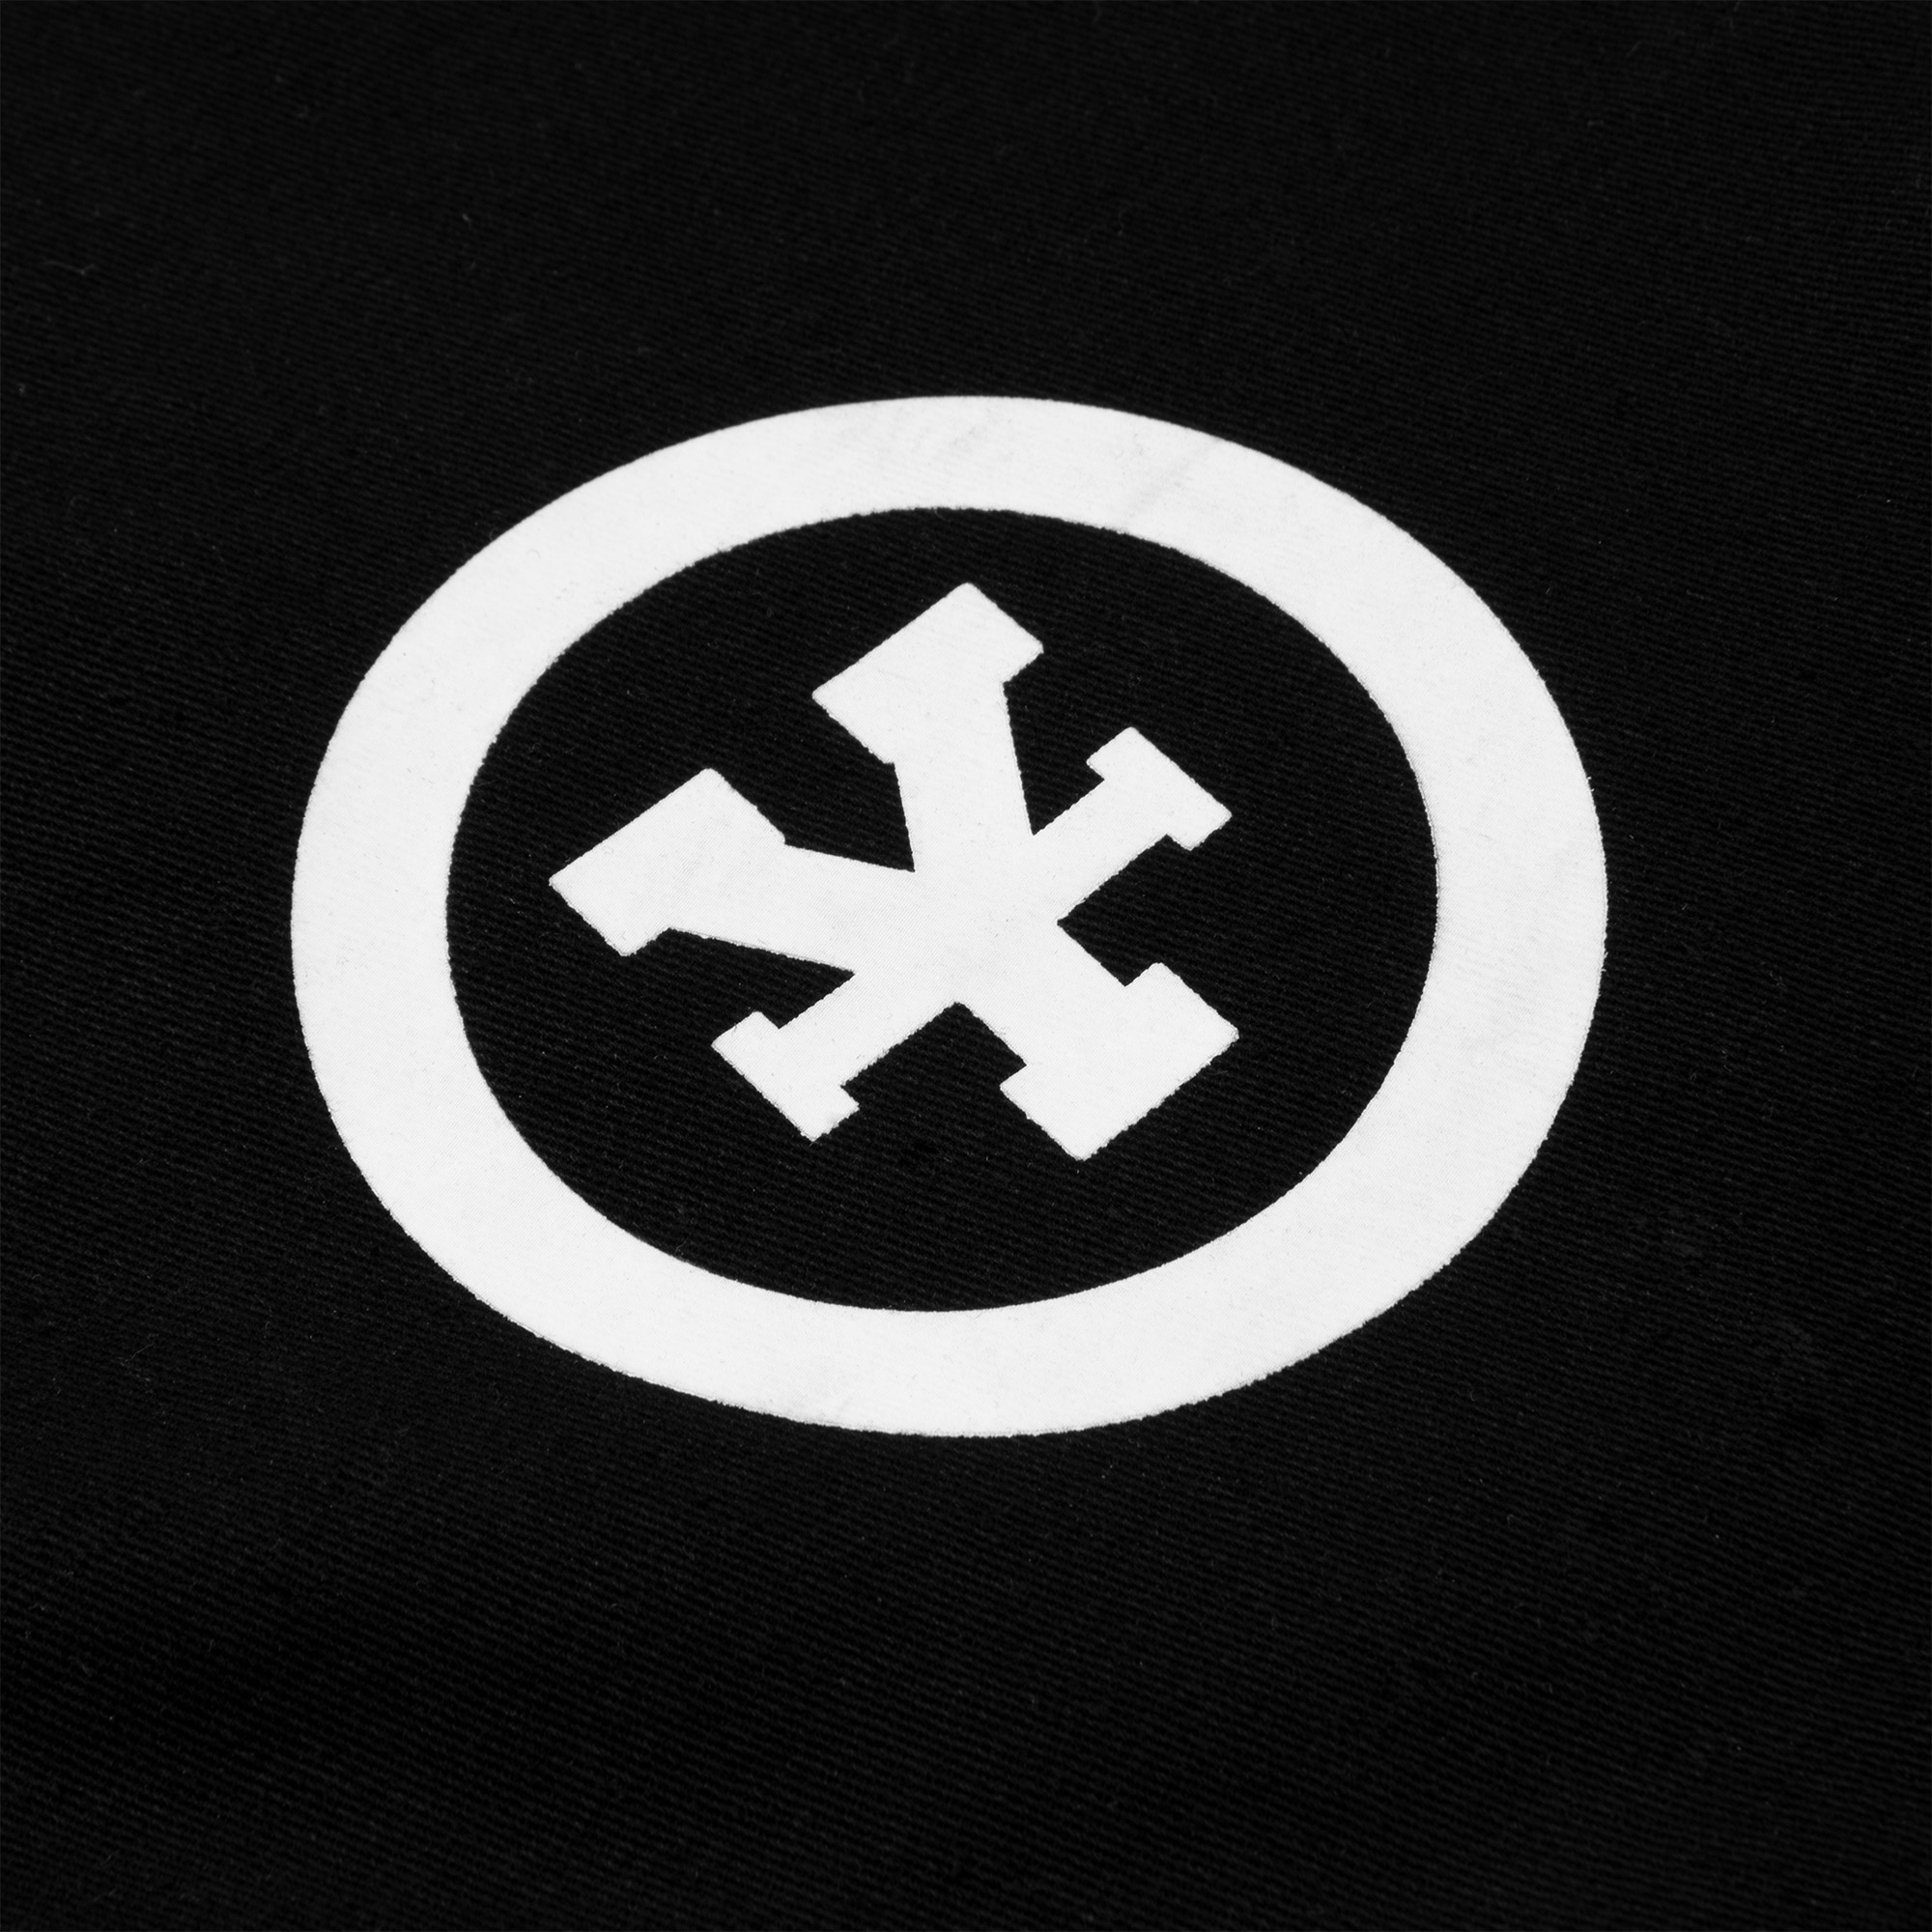 DC x OP Logo Print Khaki Pants - Black